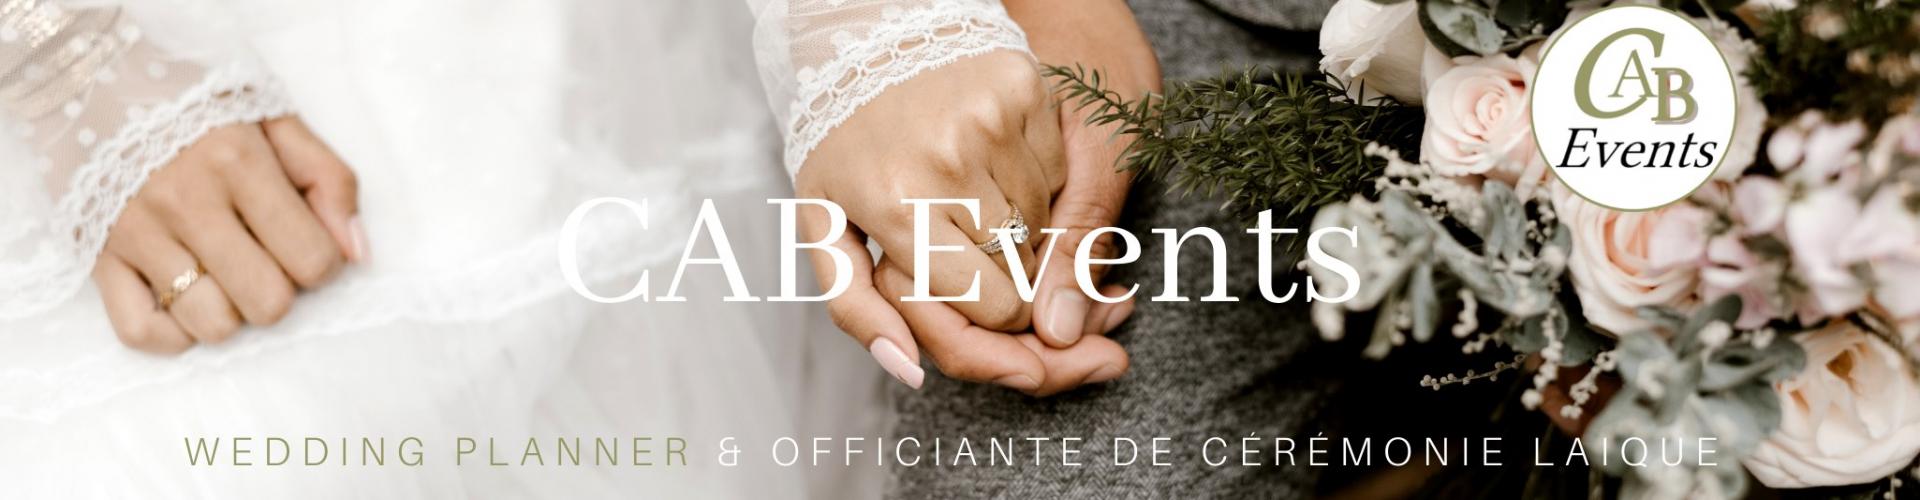 CAB Events - Wedding planner & officiant de cérémonie laïque (Normandie) - Prestataire de Mariage en Normandie